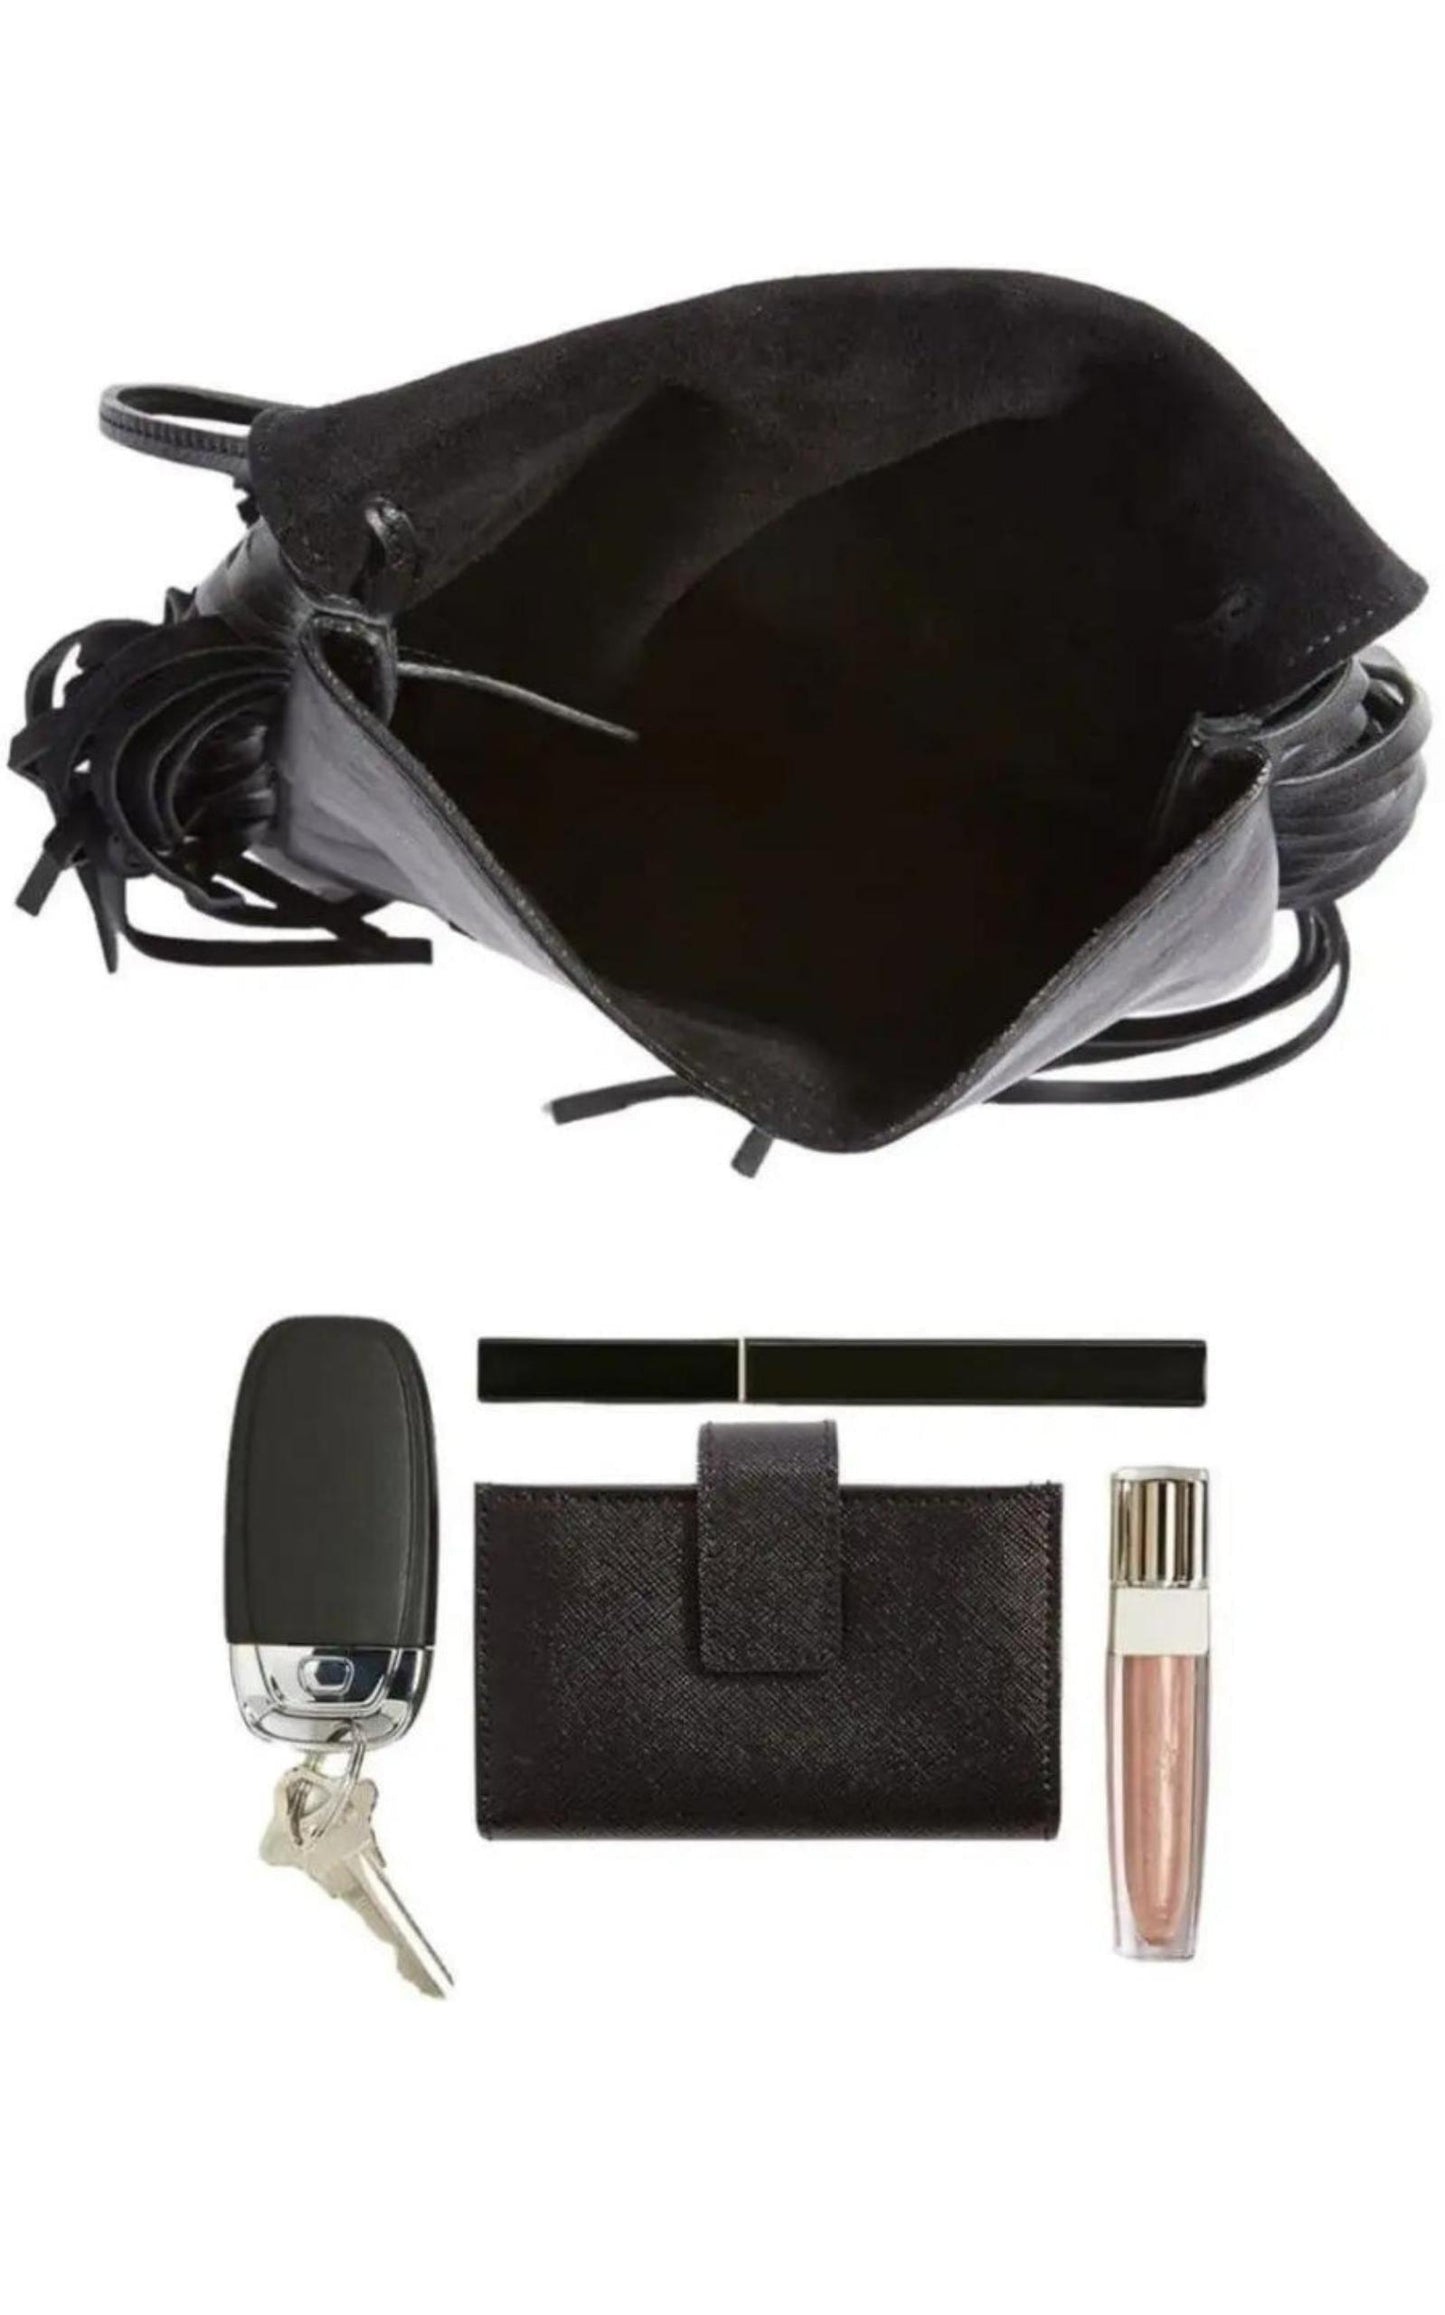  Saint LaurentAnita Fringe Leather Crossbody Bag - Runway Catalog